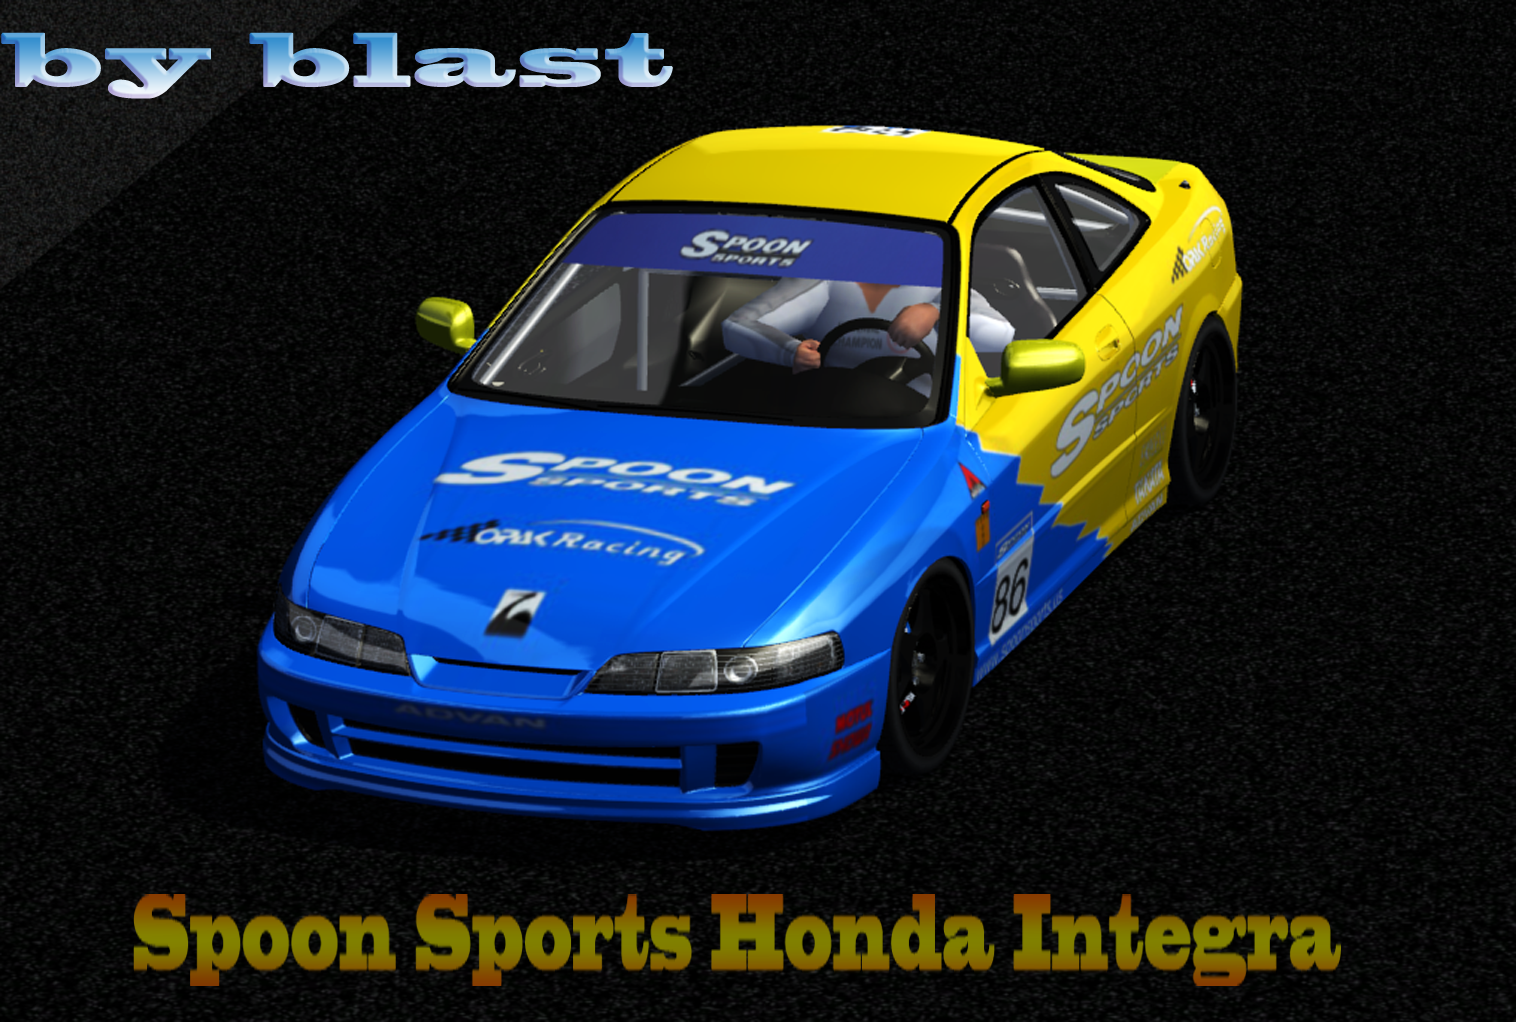 Honda integra street legal racing #5